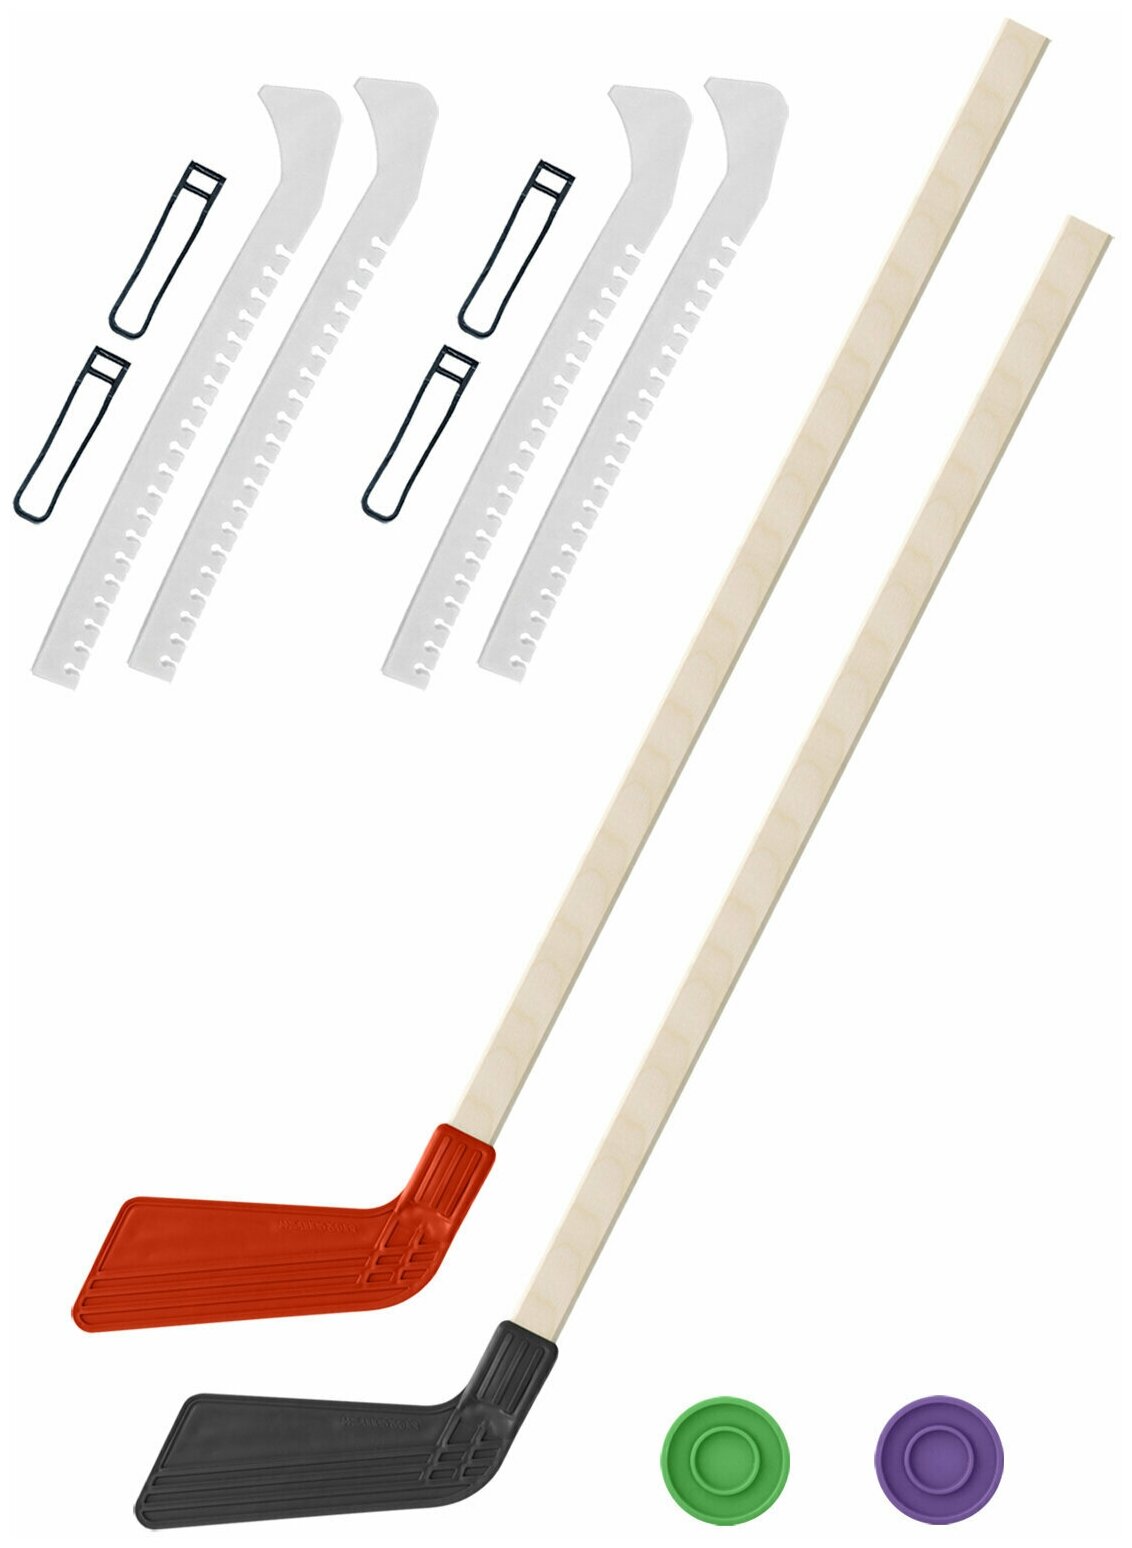 Детский хоккейный набор для игр на улице Клюшка хоккейная детская 2 шт. красная и чёрная 80 см.+2 шайбы + Чехлы для коньков белые - 2 шт.